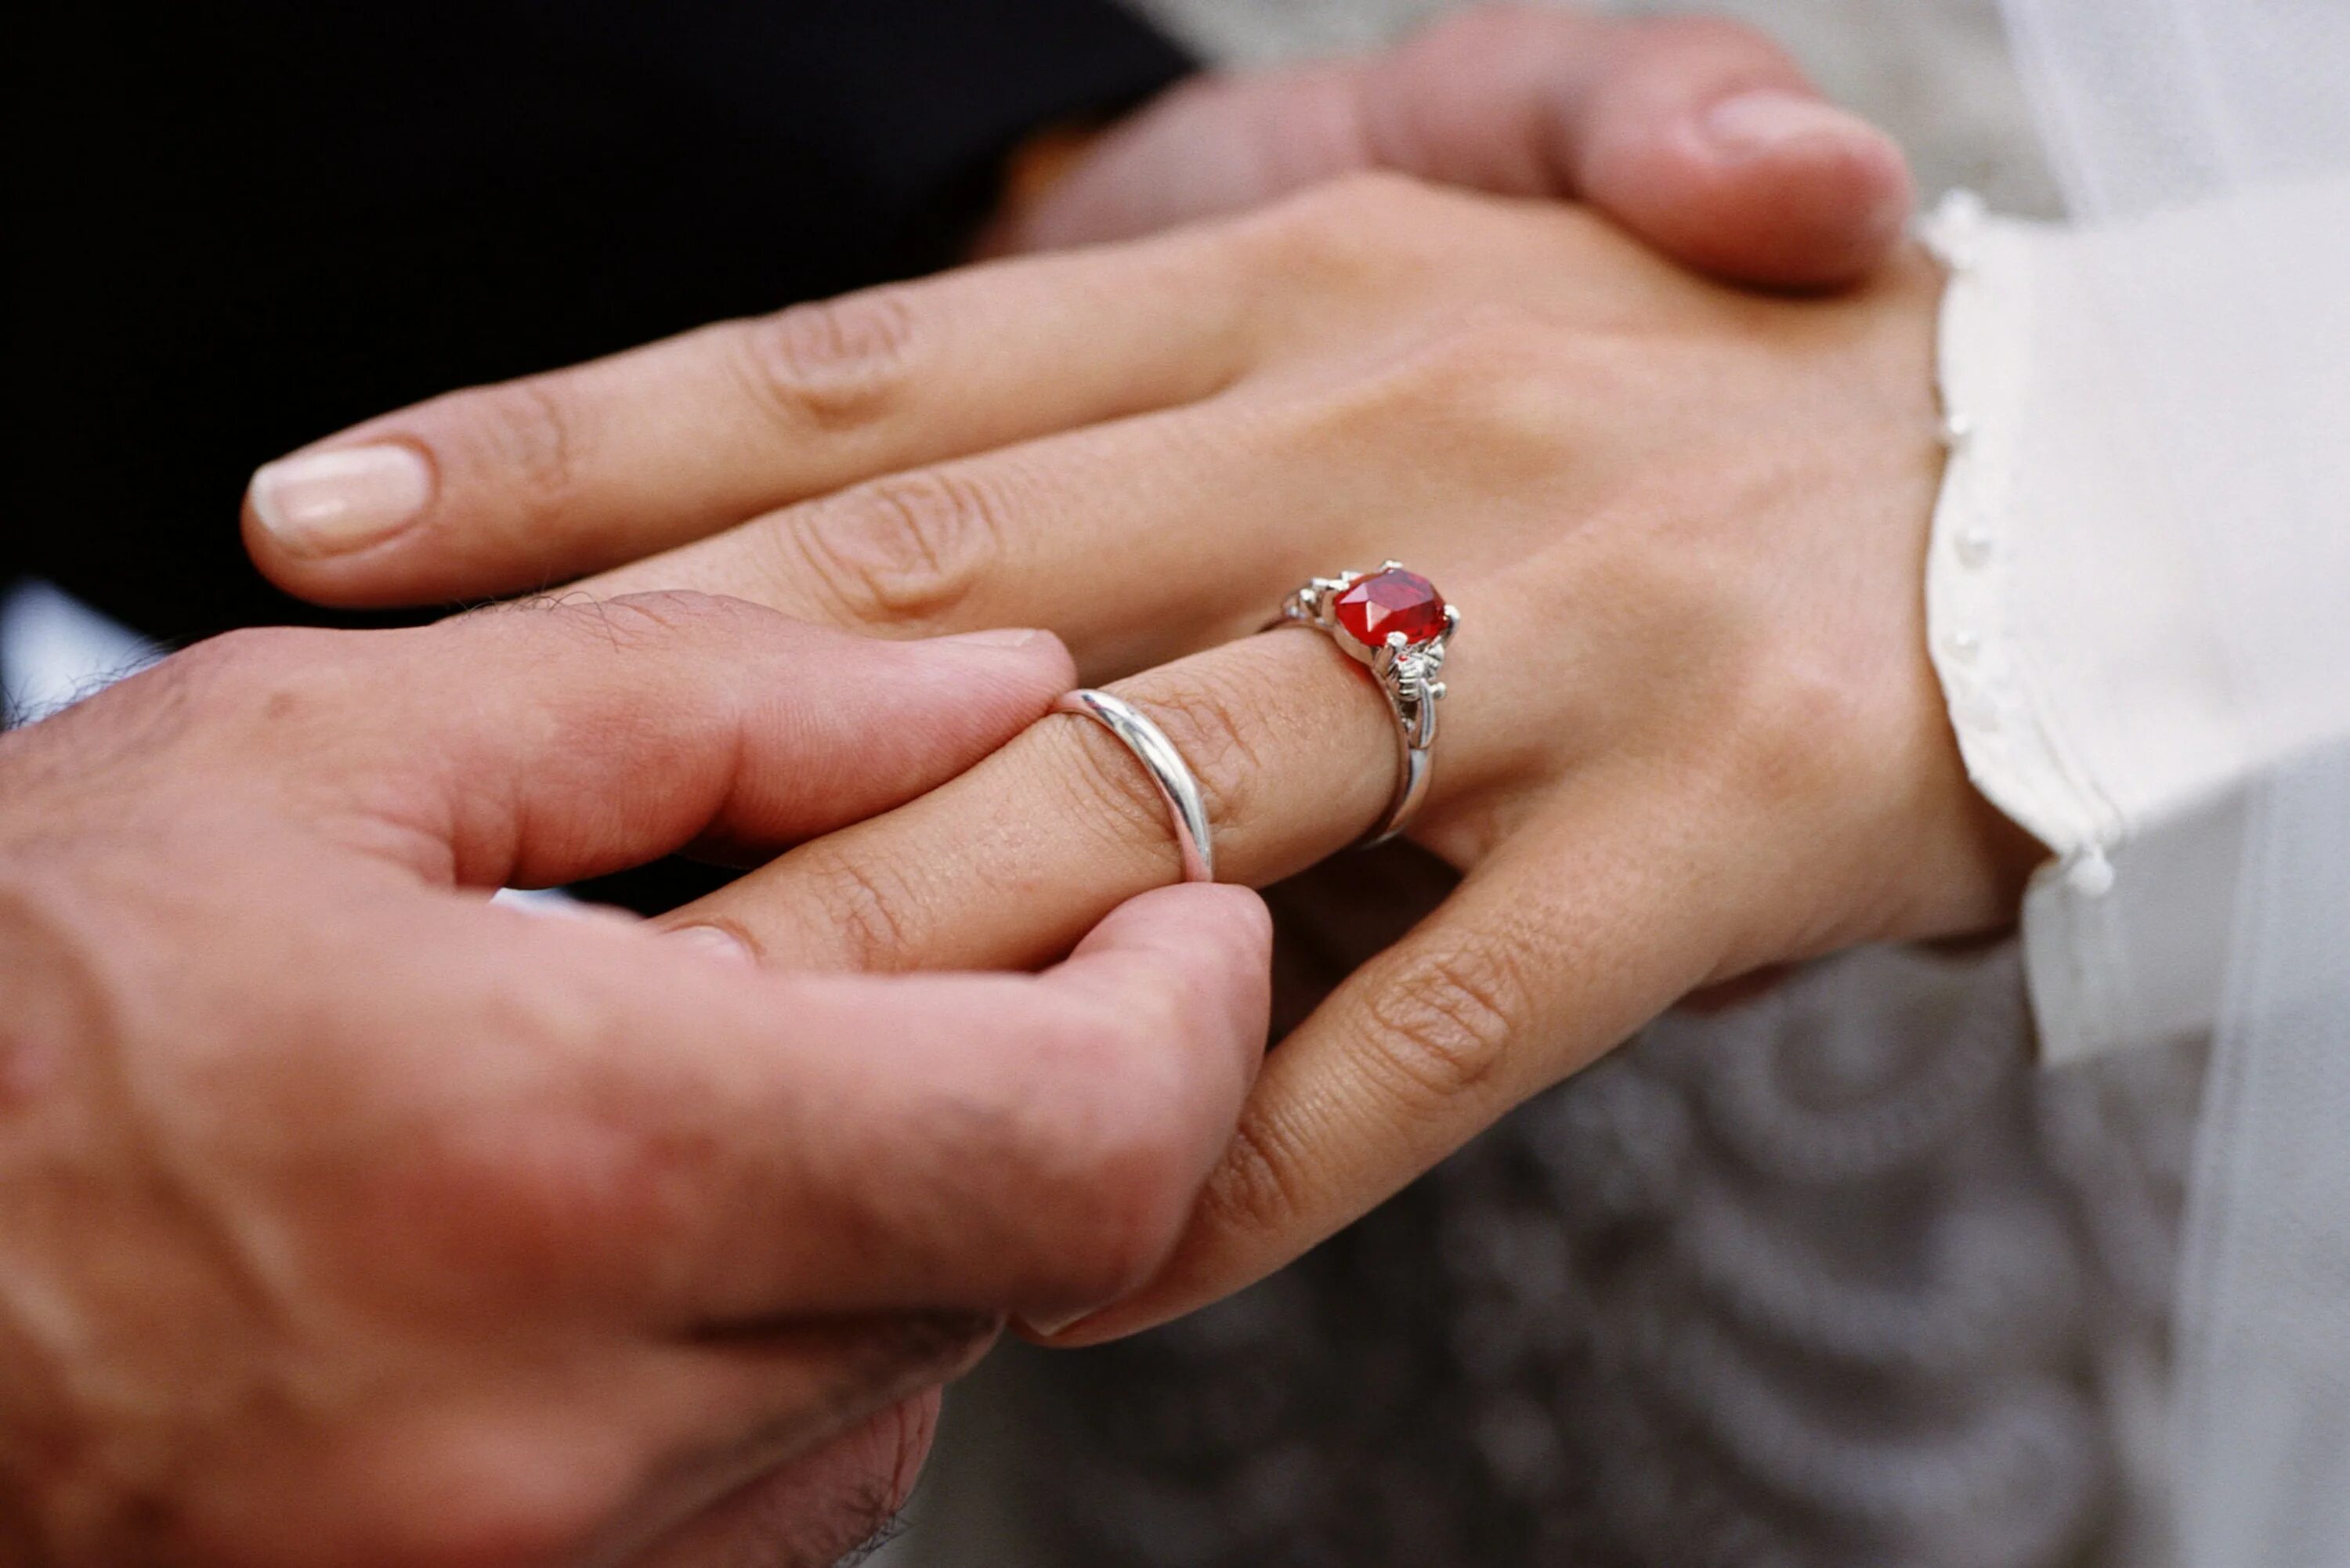 Муж обручальное кольцо. Парные обручальные кольца на мужских руках. Обручальное и помолвочное кольцо вместе. Стильные обручальные кольца на руках. Фото руки с обручальным кольцом у девушки.